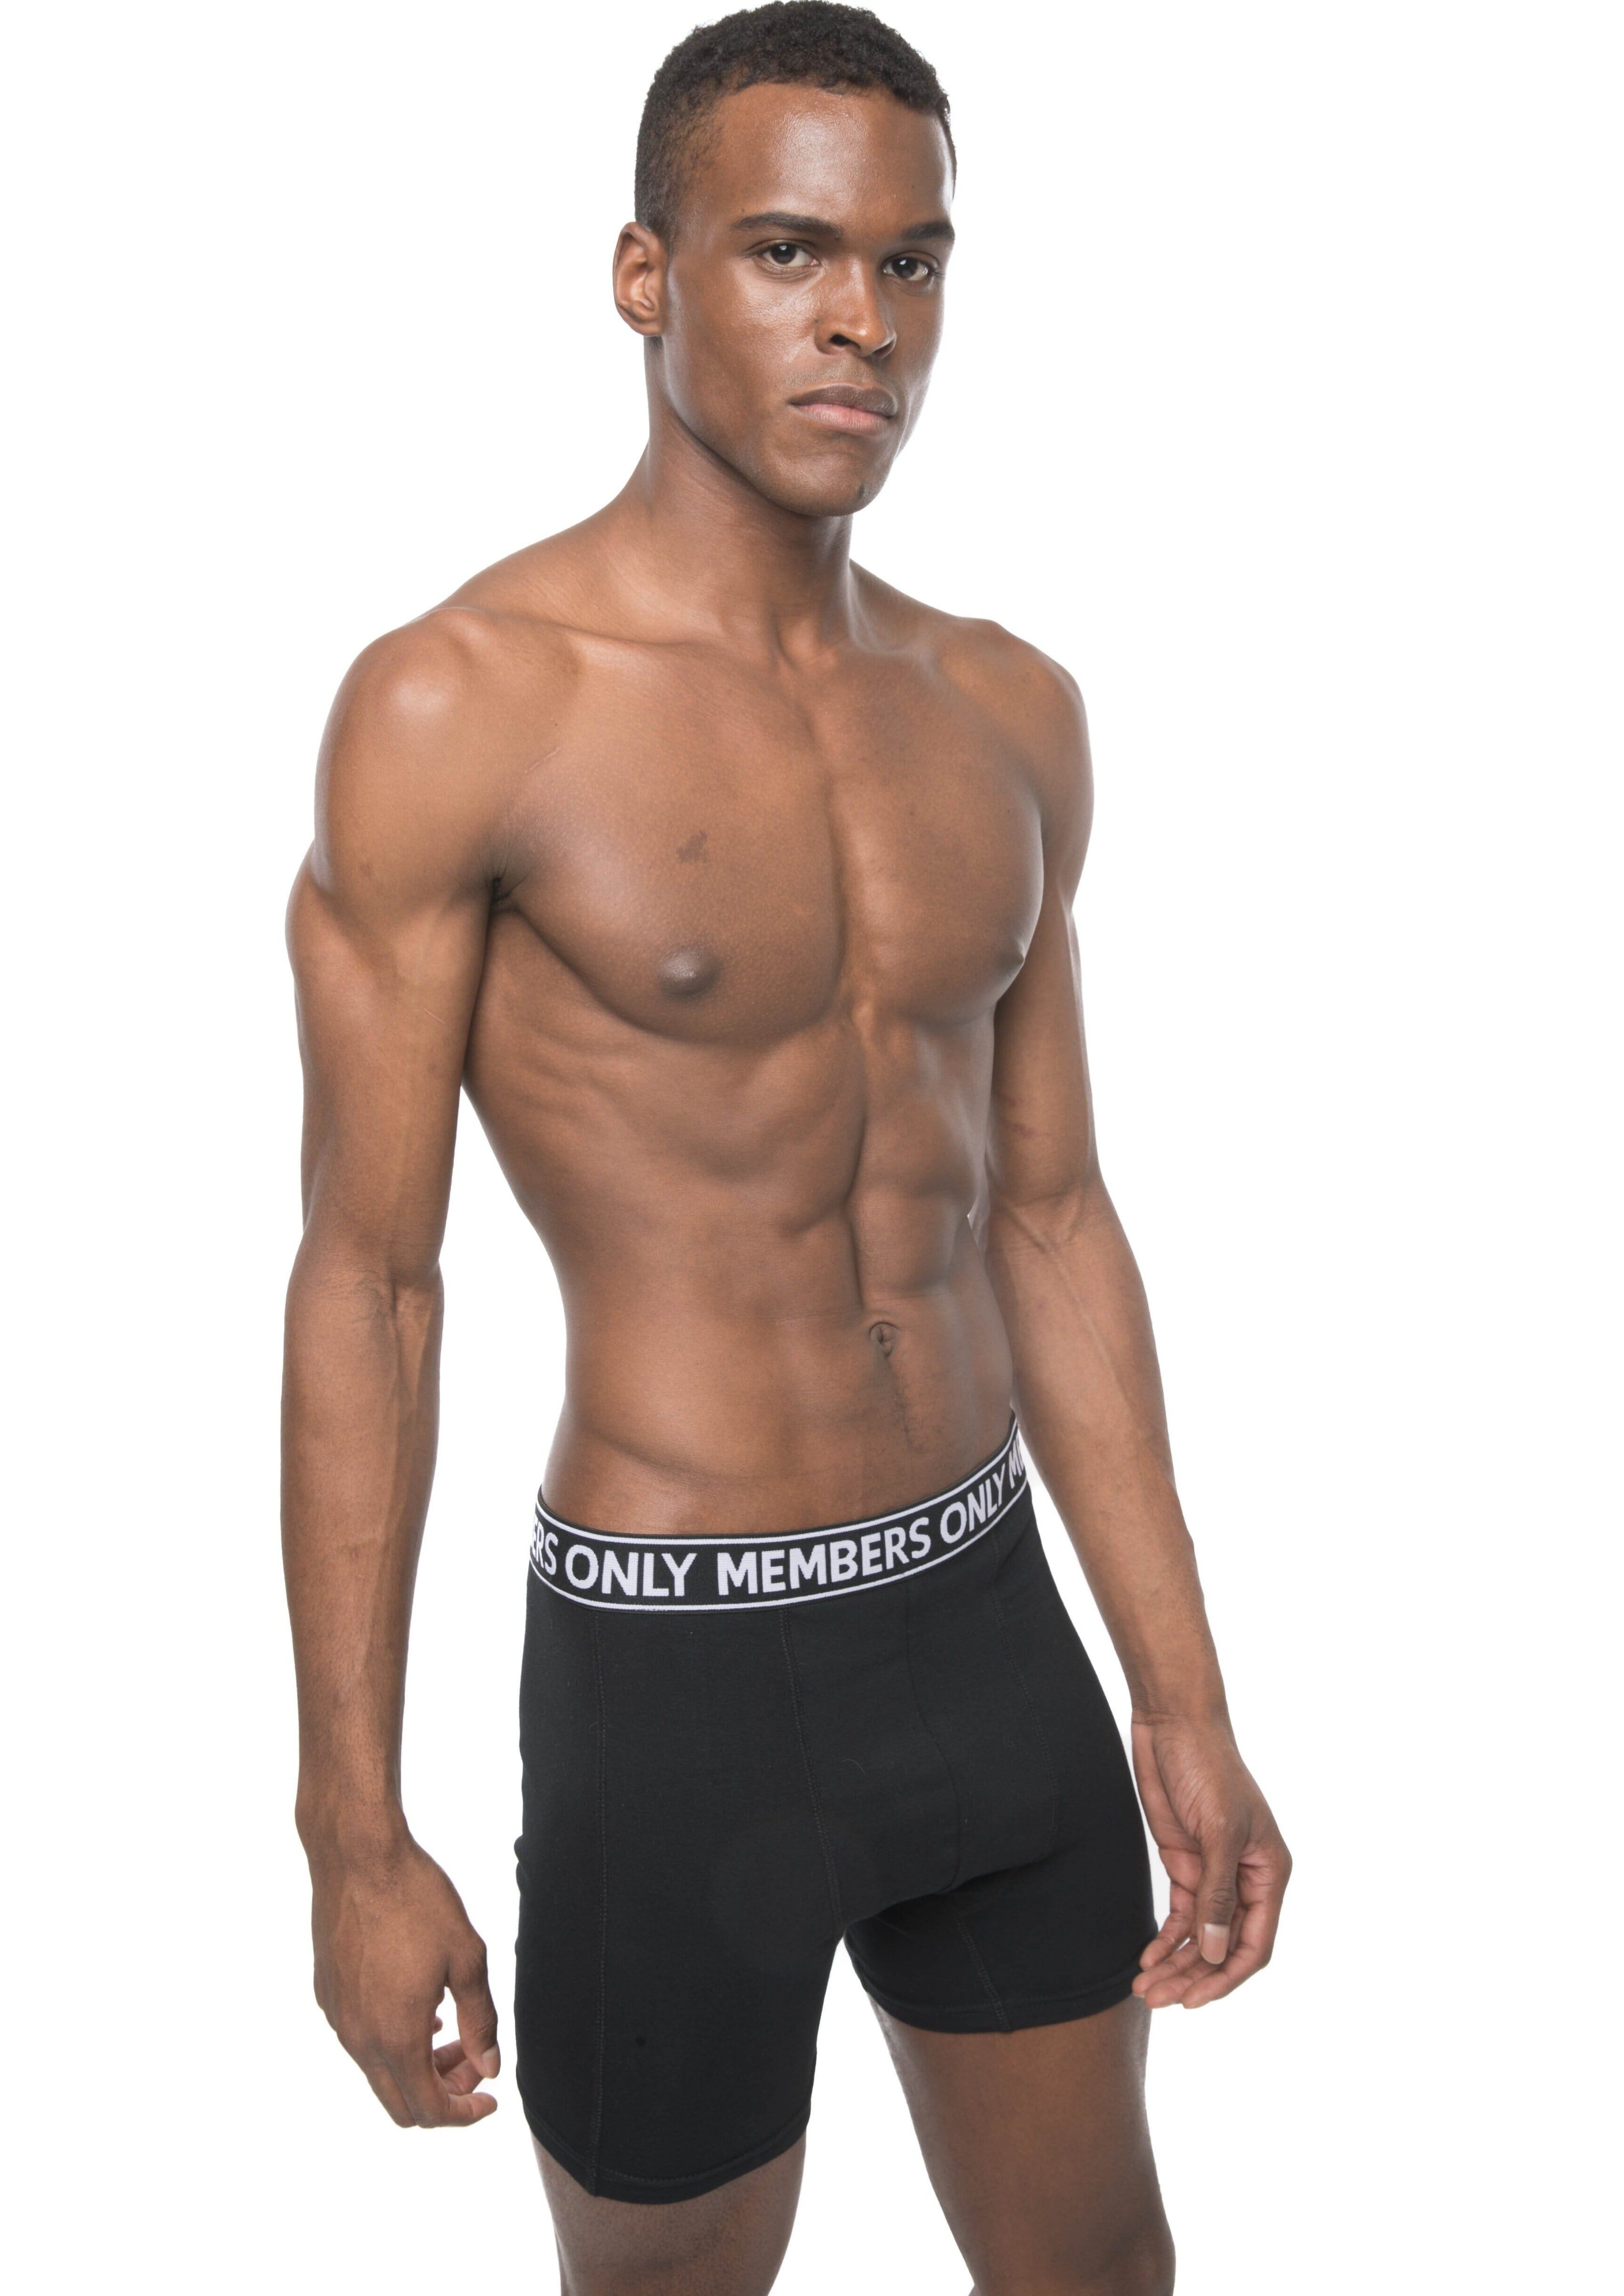 Men's Underwear Boxers Briefs Soft Comfortable Cotton All Citizens Underwear